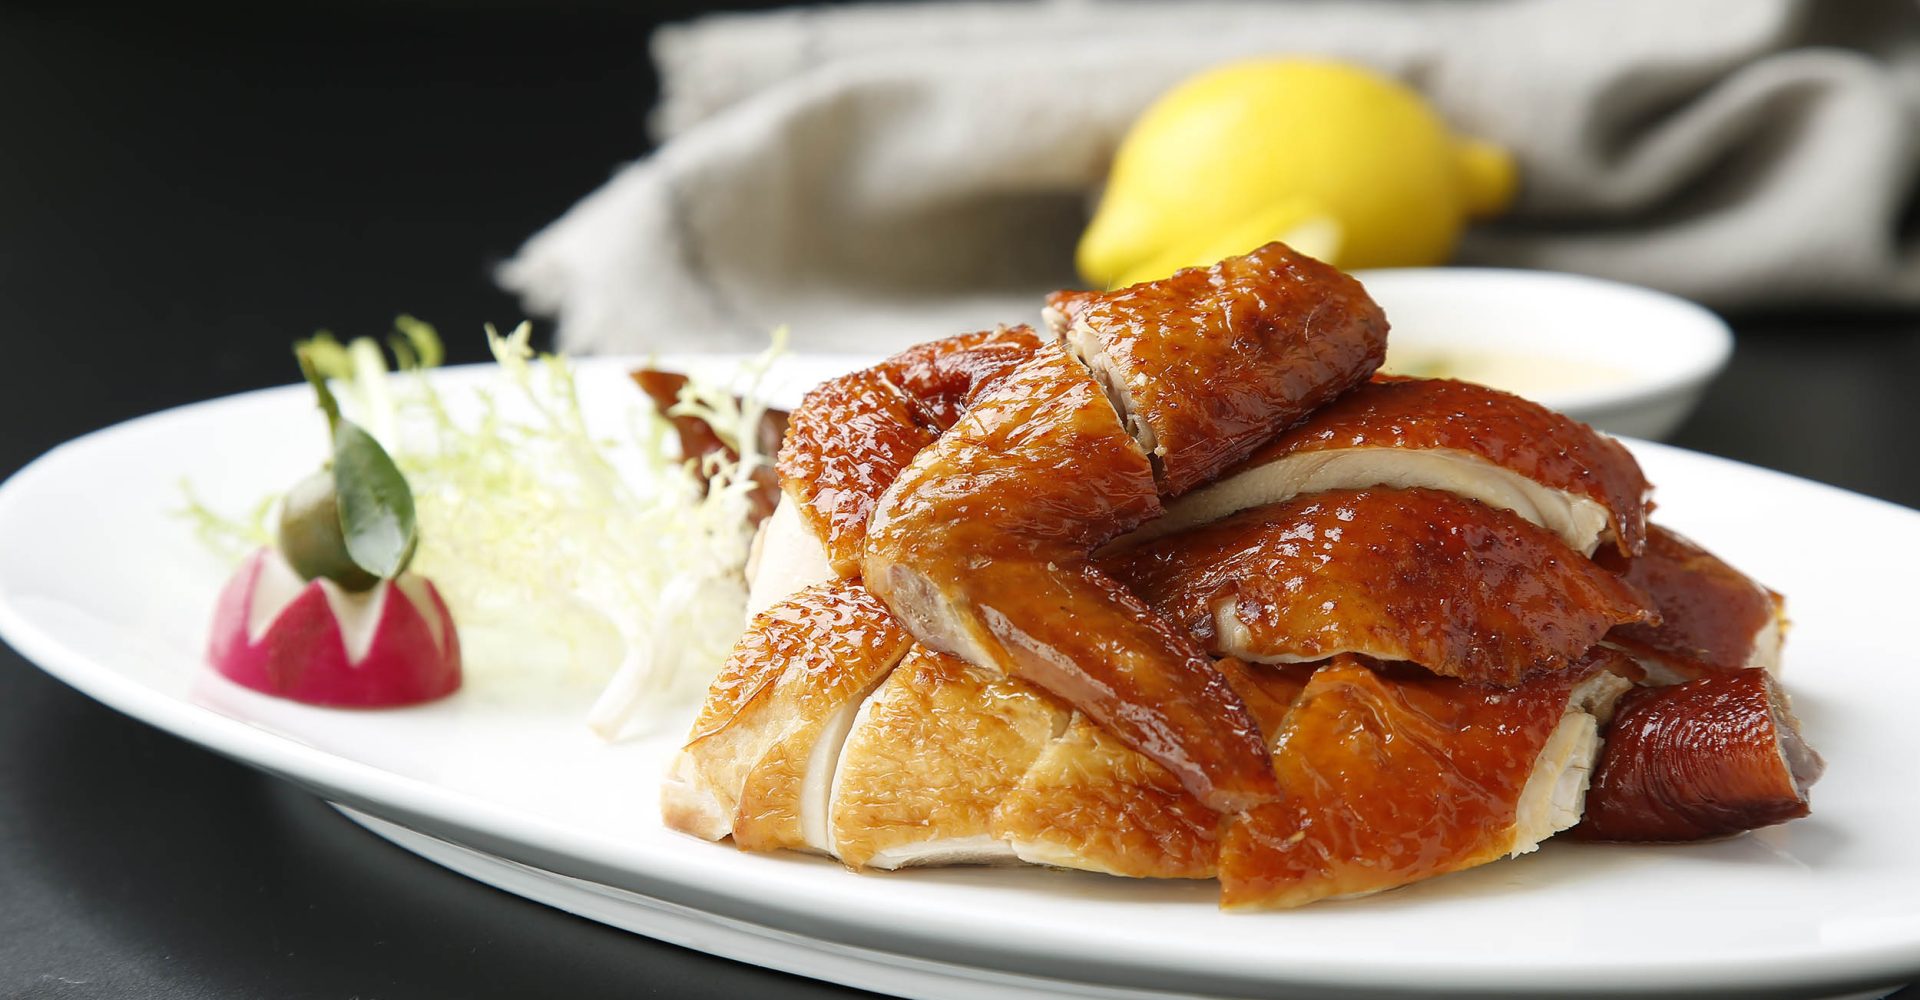 Premium HK style fried chicken